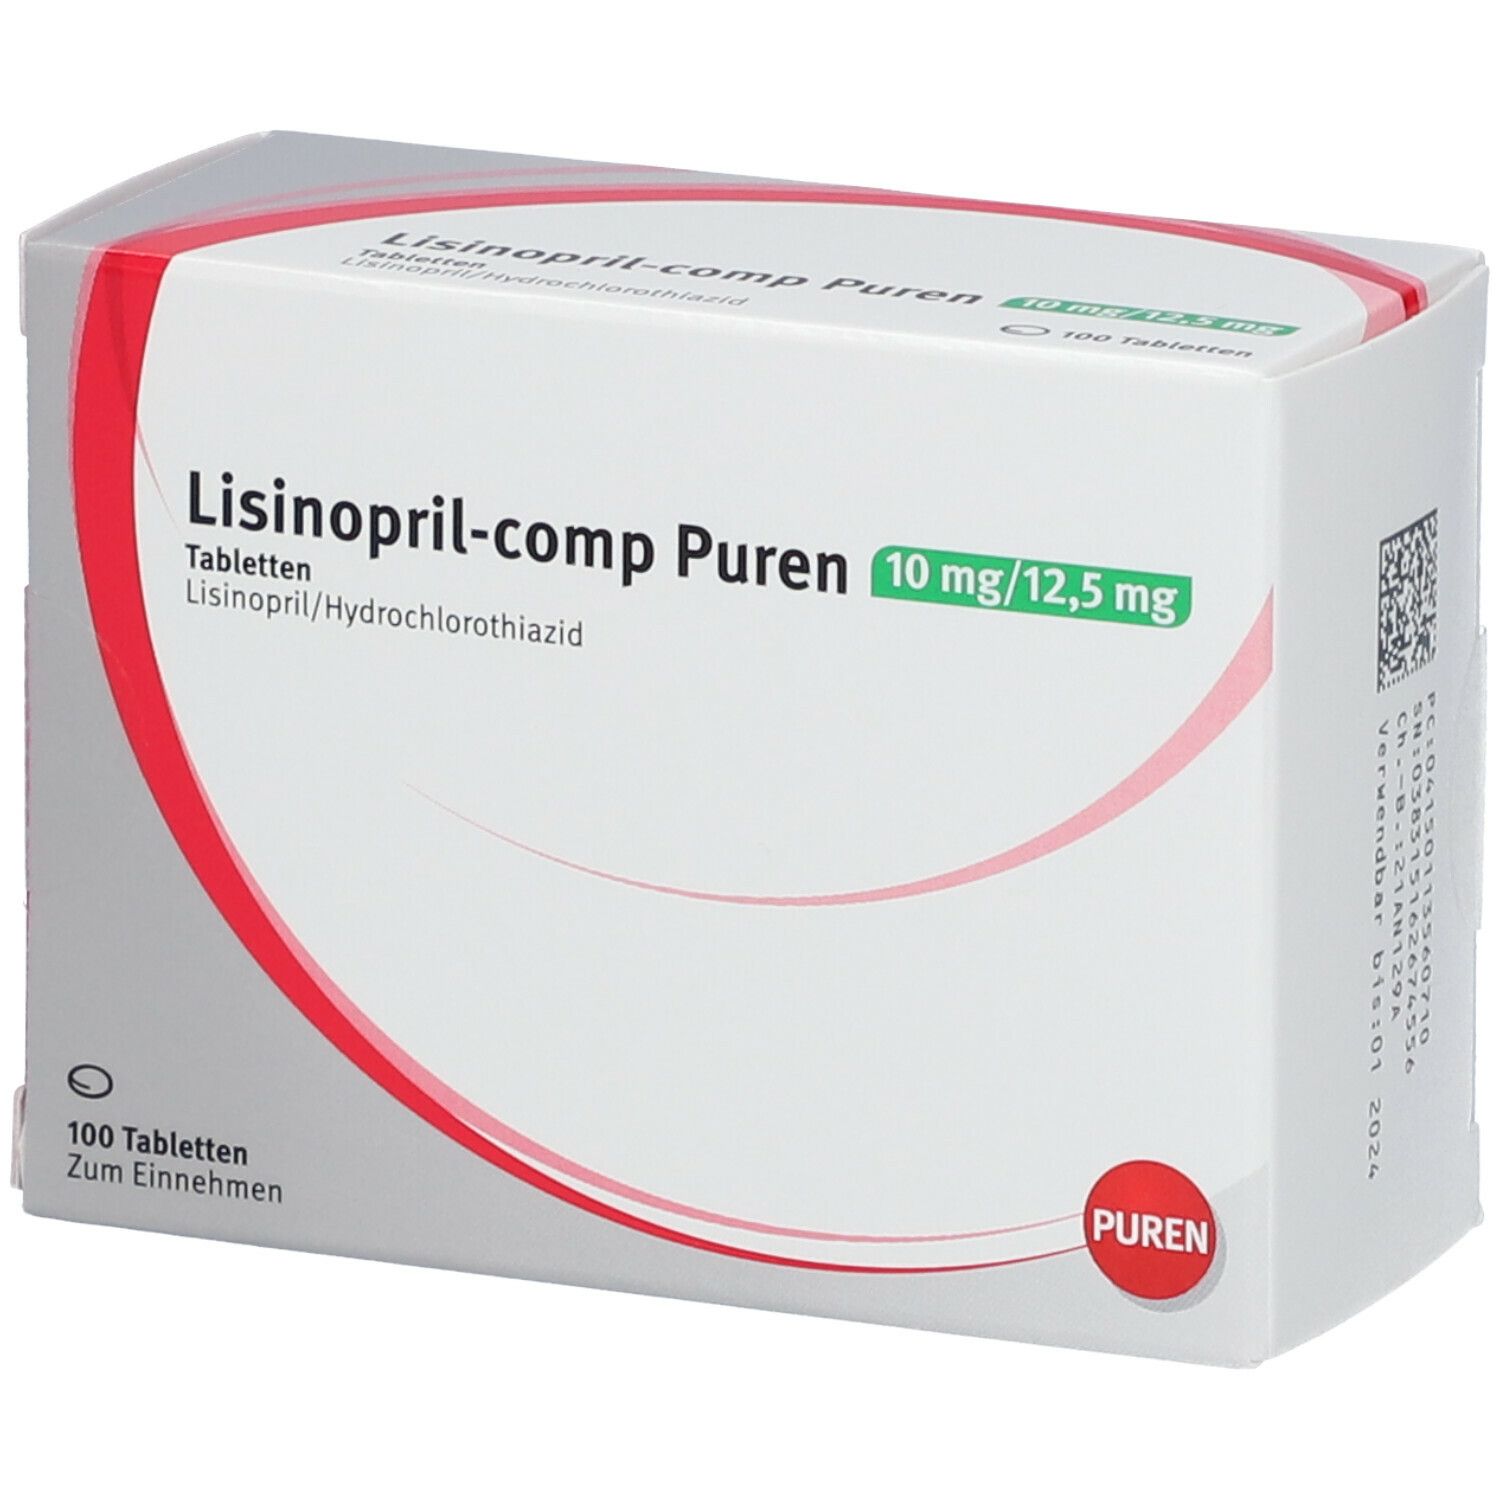 Lisinopril-comp PUREN 10 mg/12,5 mg